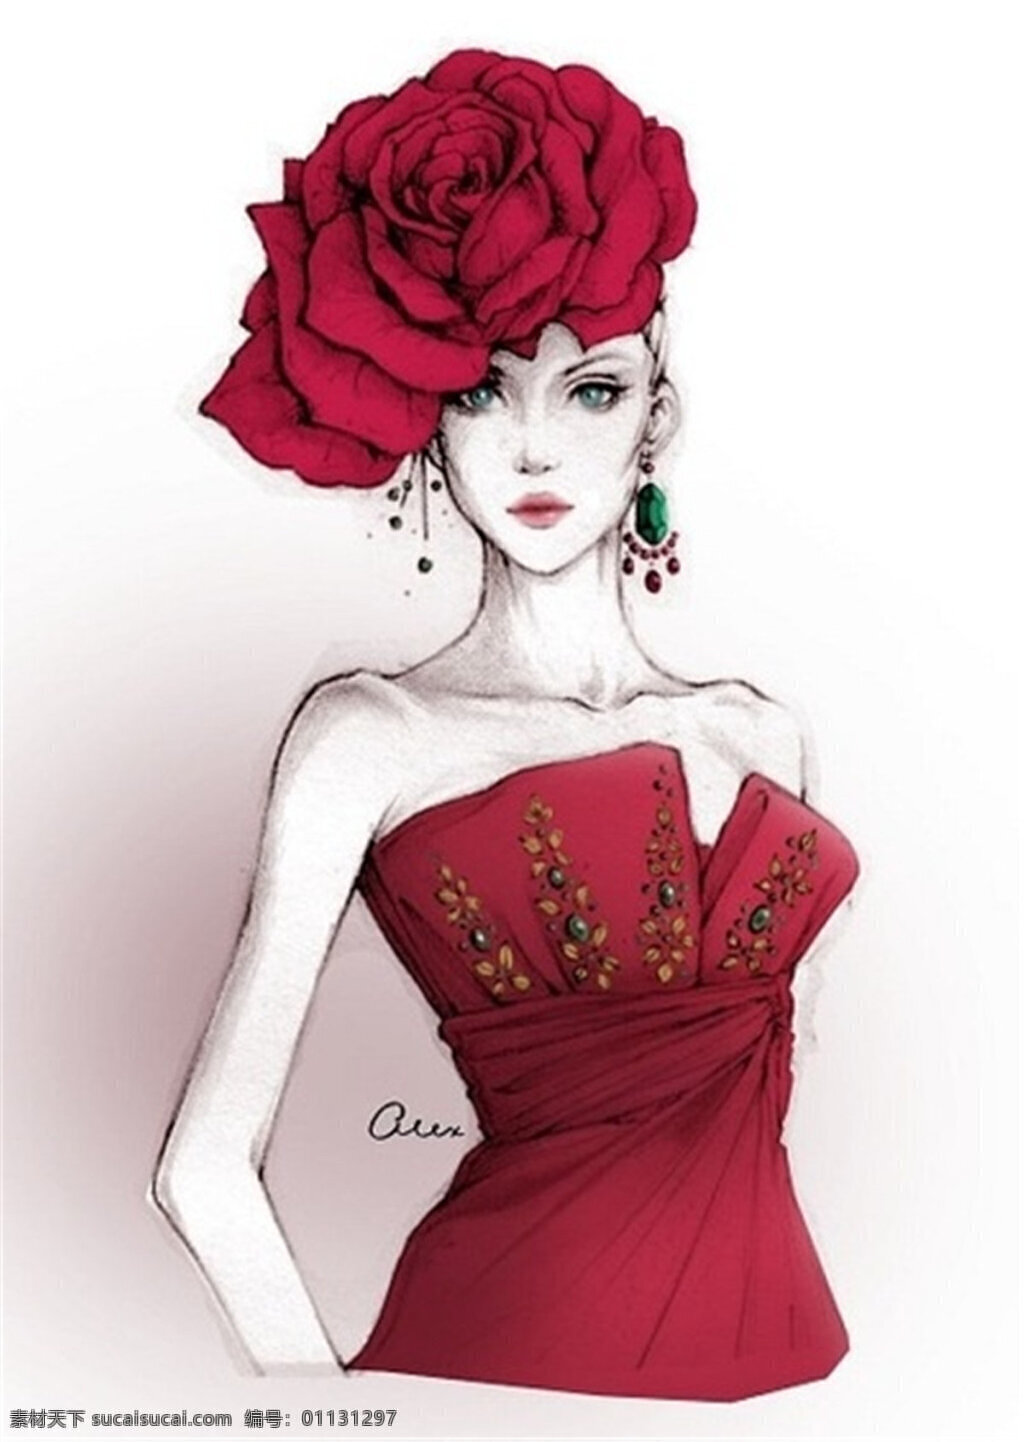 红色 花朵 礼服 设计图 服装设计 时尚女装 职业女装 职业装 女装设计 效果图 短裙 衬衫 服装 连衣裙 抹胸裙